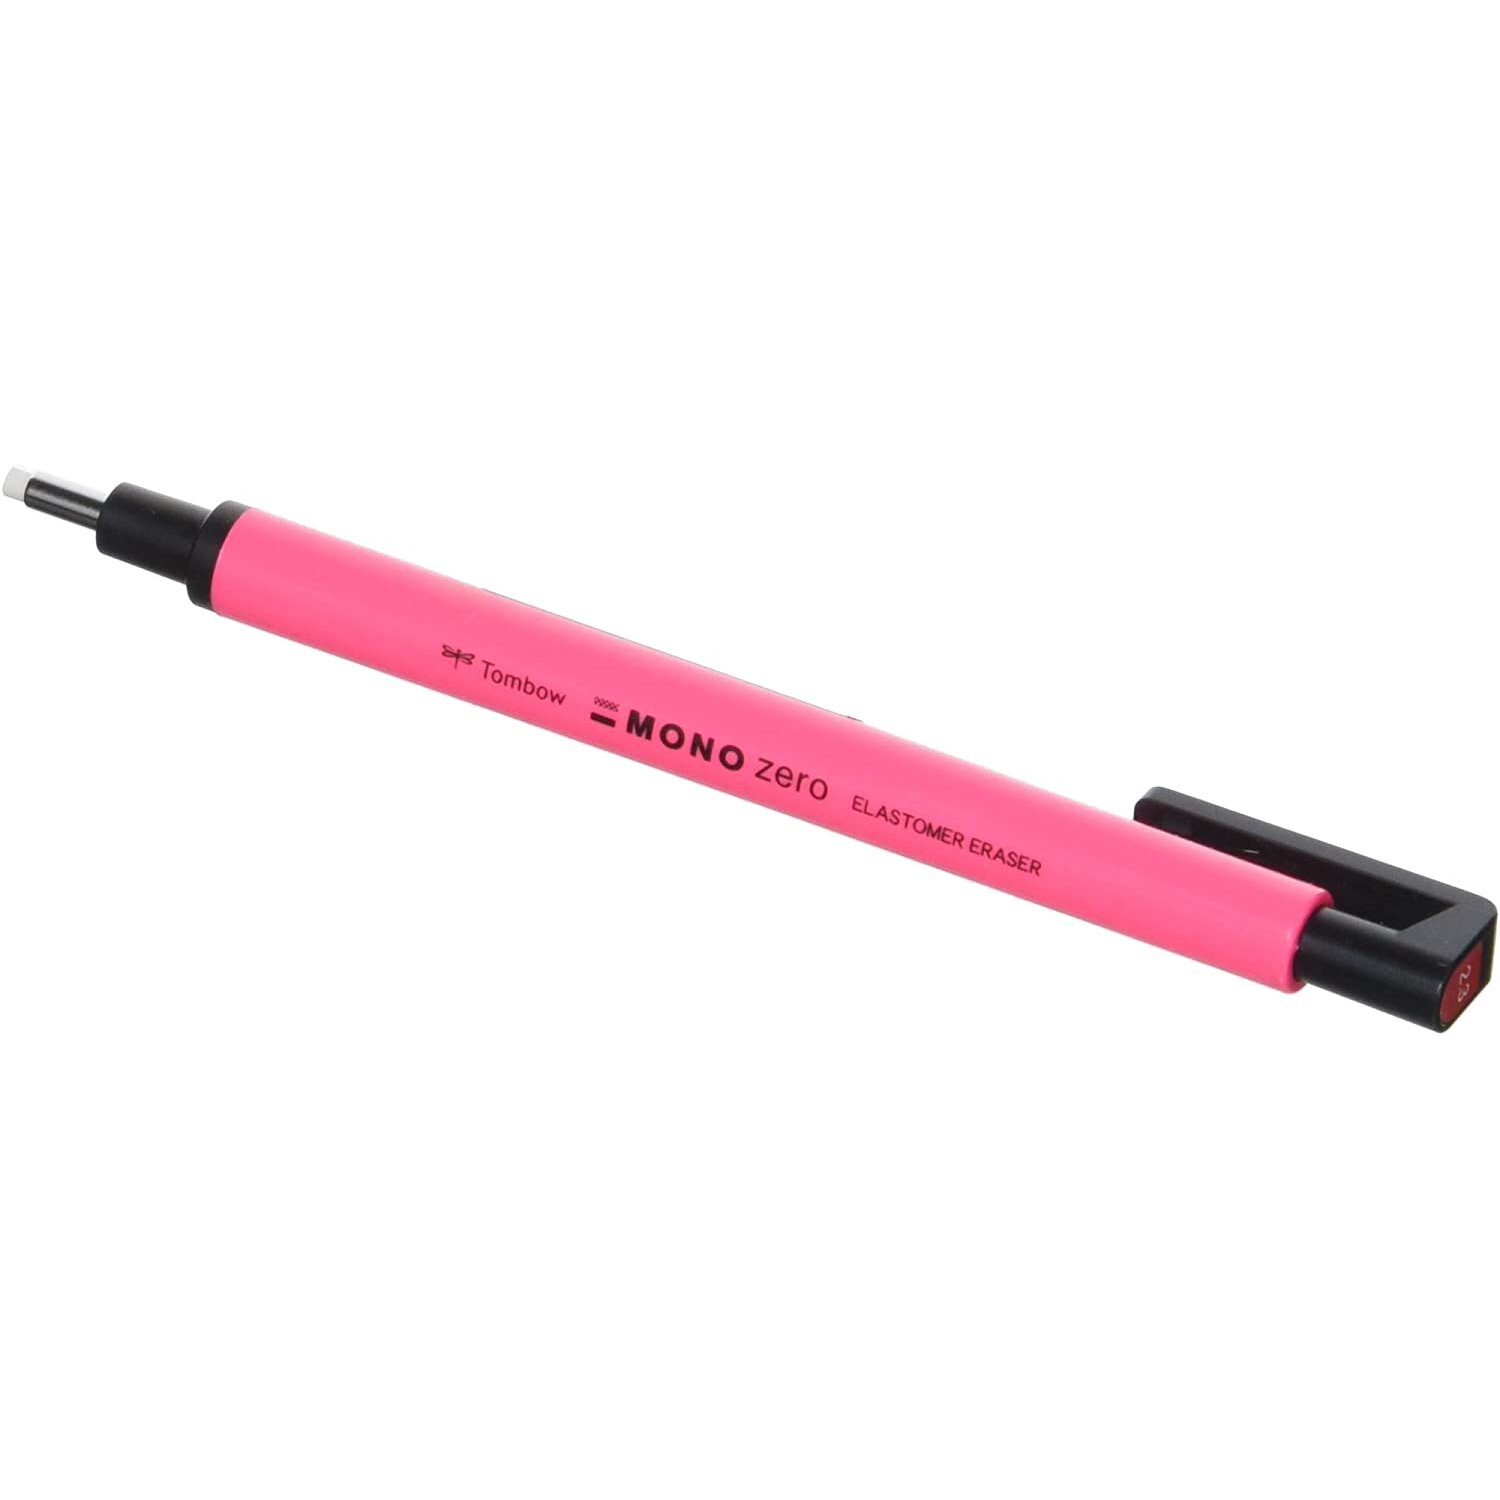 Tombow Mono Zero Precision Eraser Pen, Neon Pink